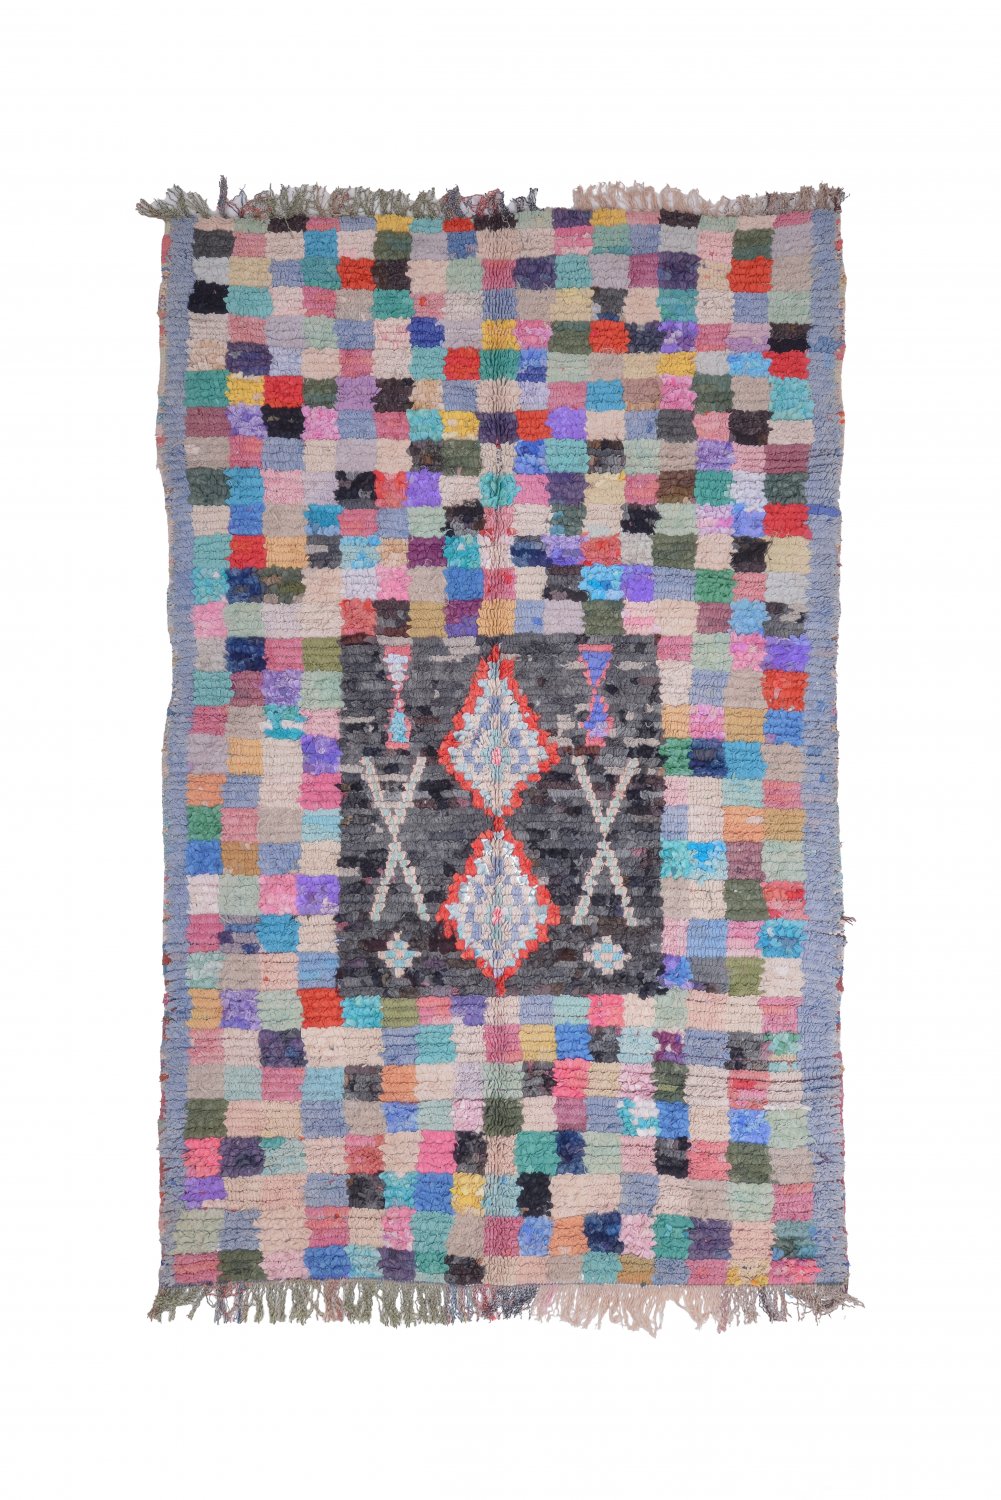 Marokkolainen Kilim matto Boucherouite 215 x 135 cm